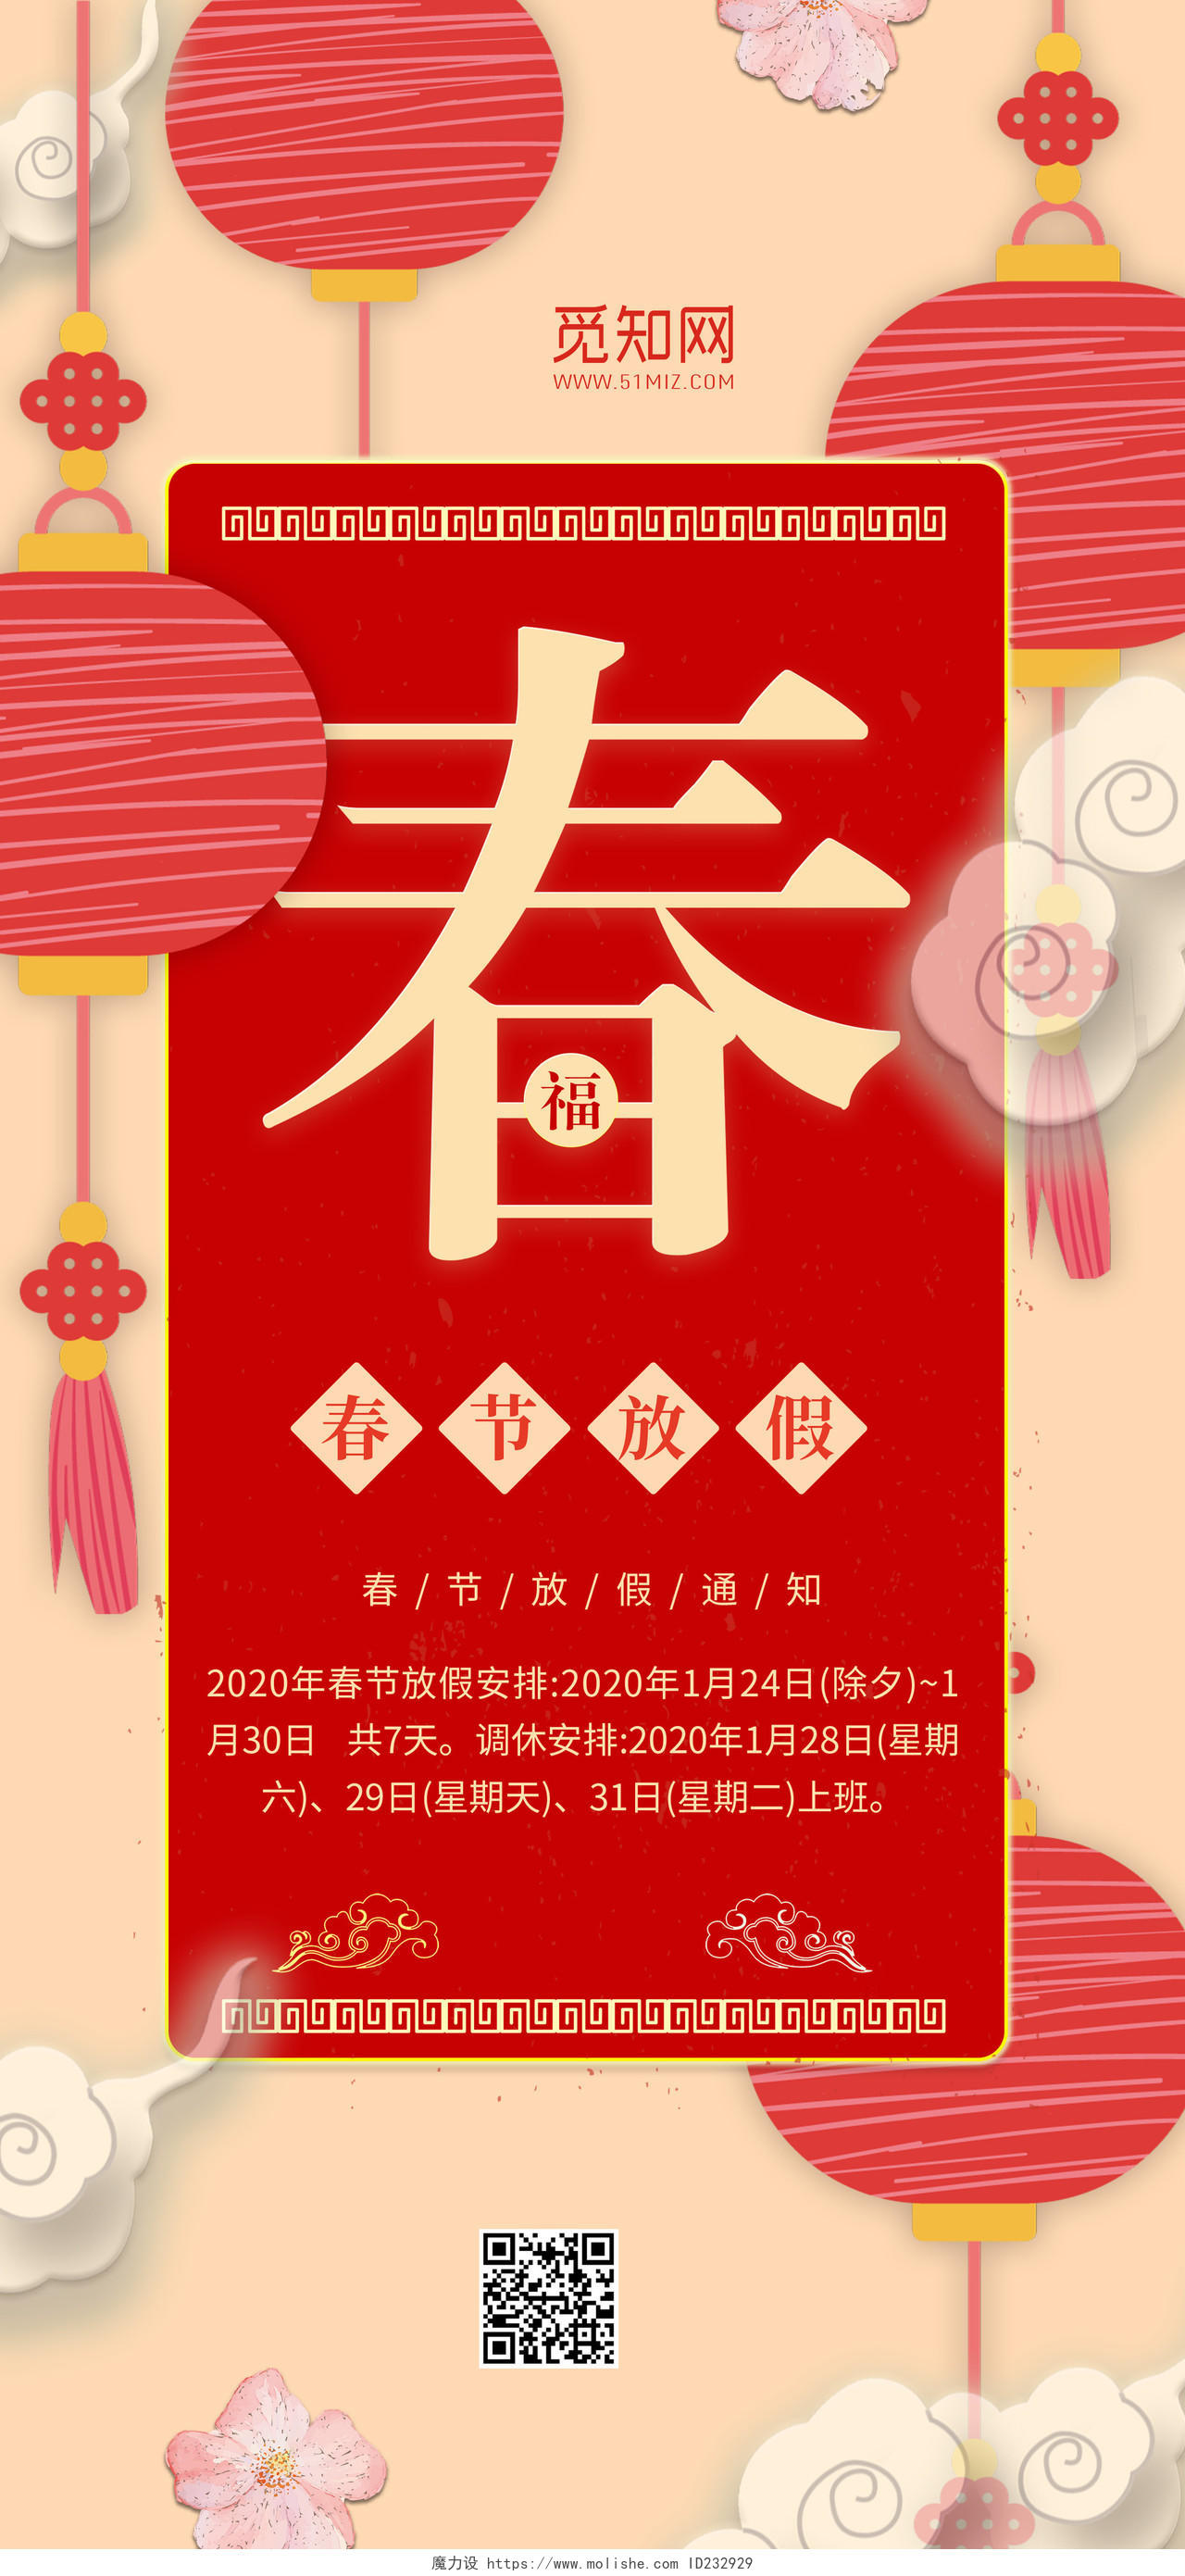 新年新春春节放假通知插画风手机海报设计